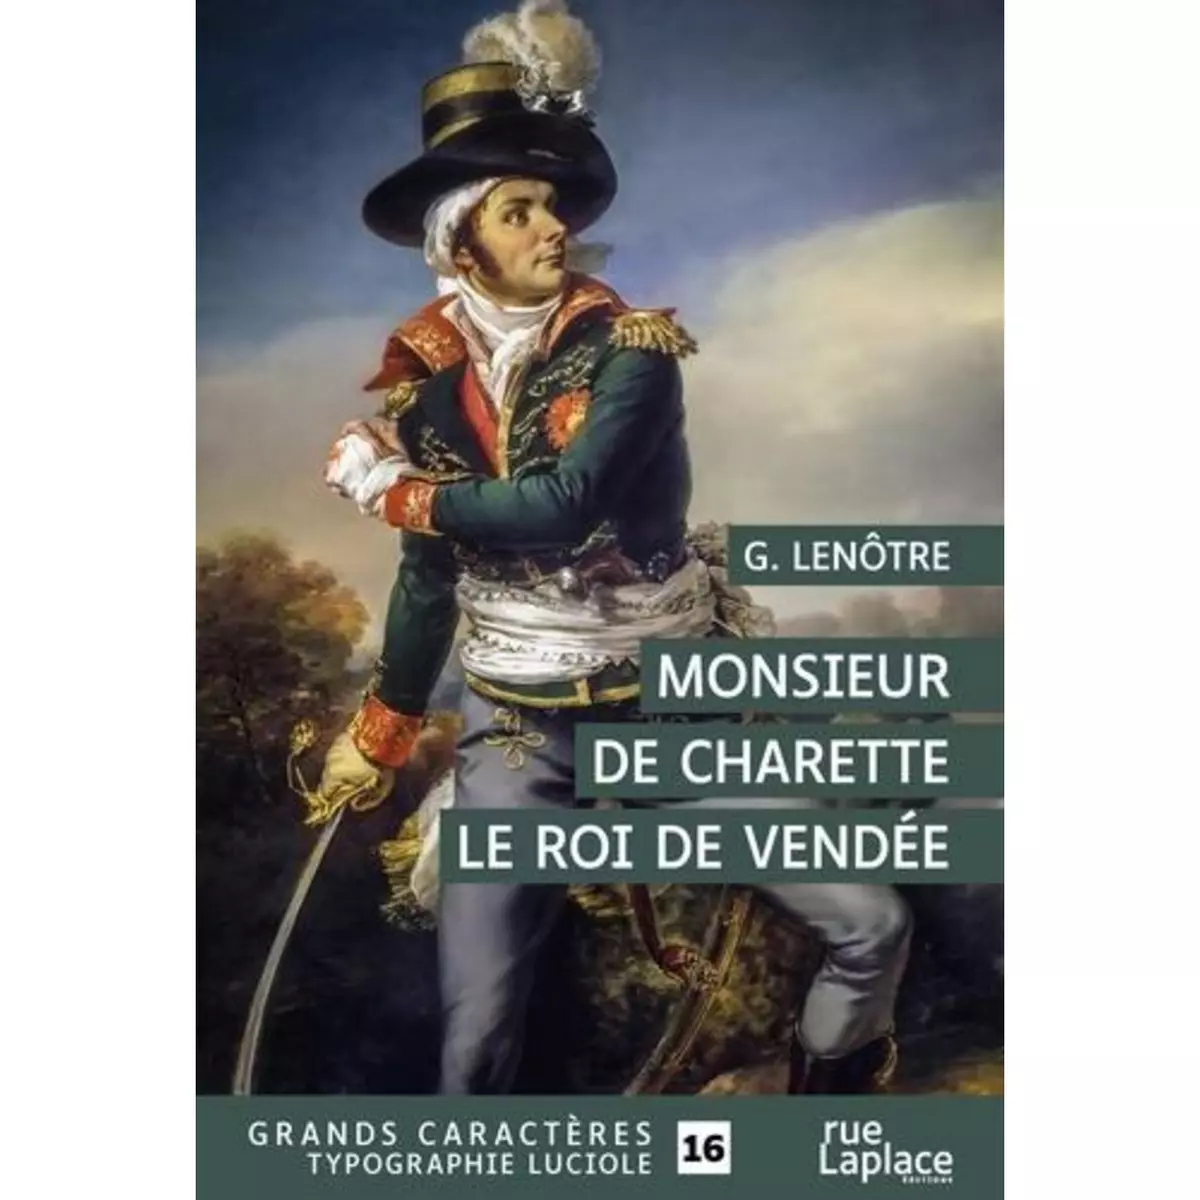  MONSIEUR DE CHARETTE. LE ROI DE VENDEE [EDITION EN GROS CARACTERES], Lenotre G.